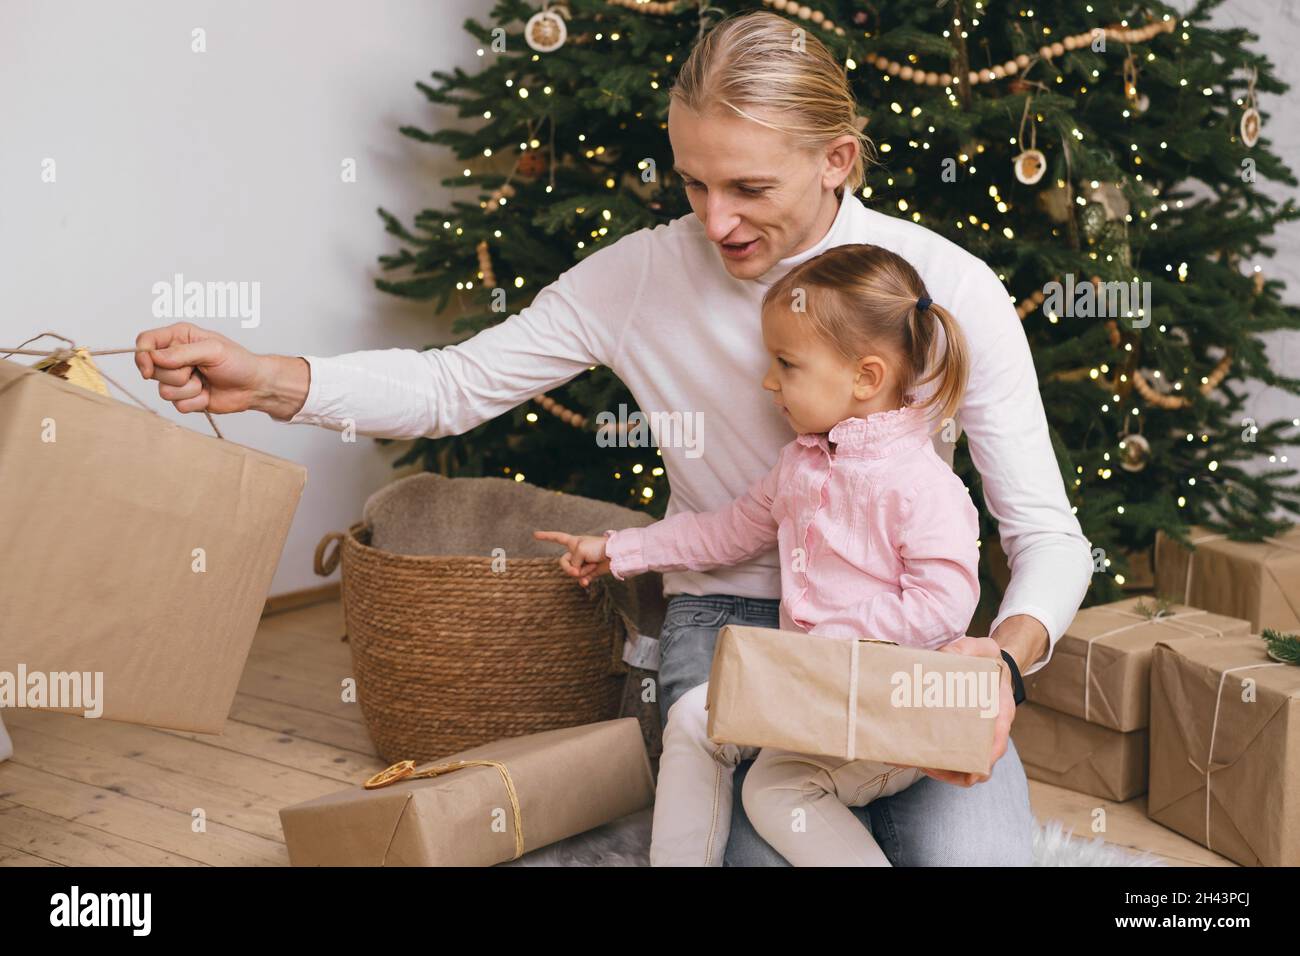 Le père avec l'enfant se prépare pour Noël, emballant les boîtes-cadeaux près de l'arbre.Une famille heureuse rêvant de fêtes et de cadeaux dans un cadre élégant Banque D'Images